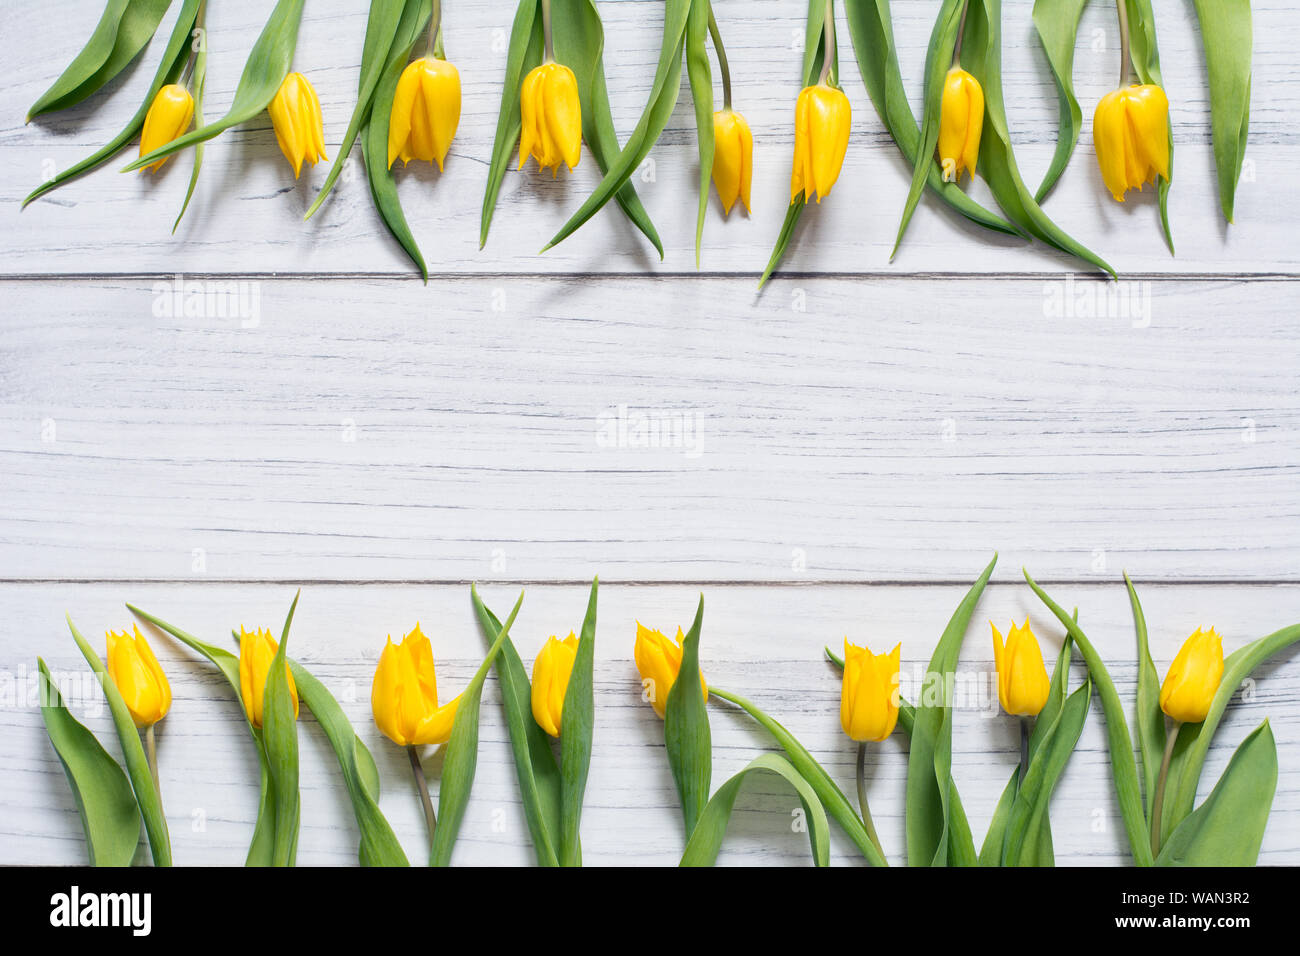 Feder Grenze mit zwei Reihen von gelben Tulpen auf weißem Holz- Hintergrund Stockfoto